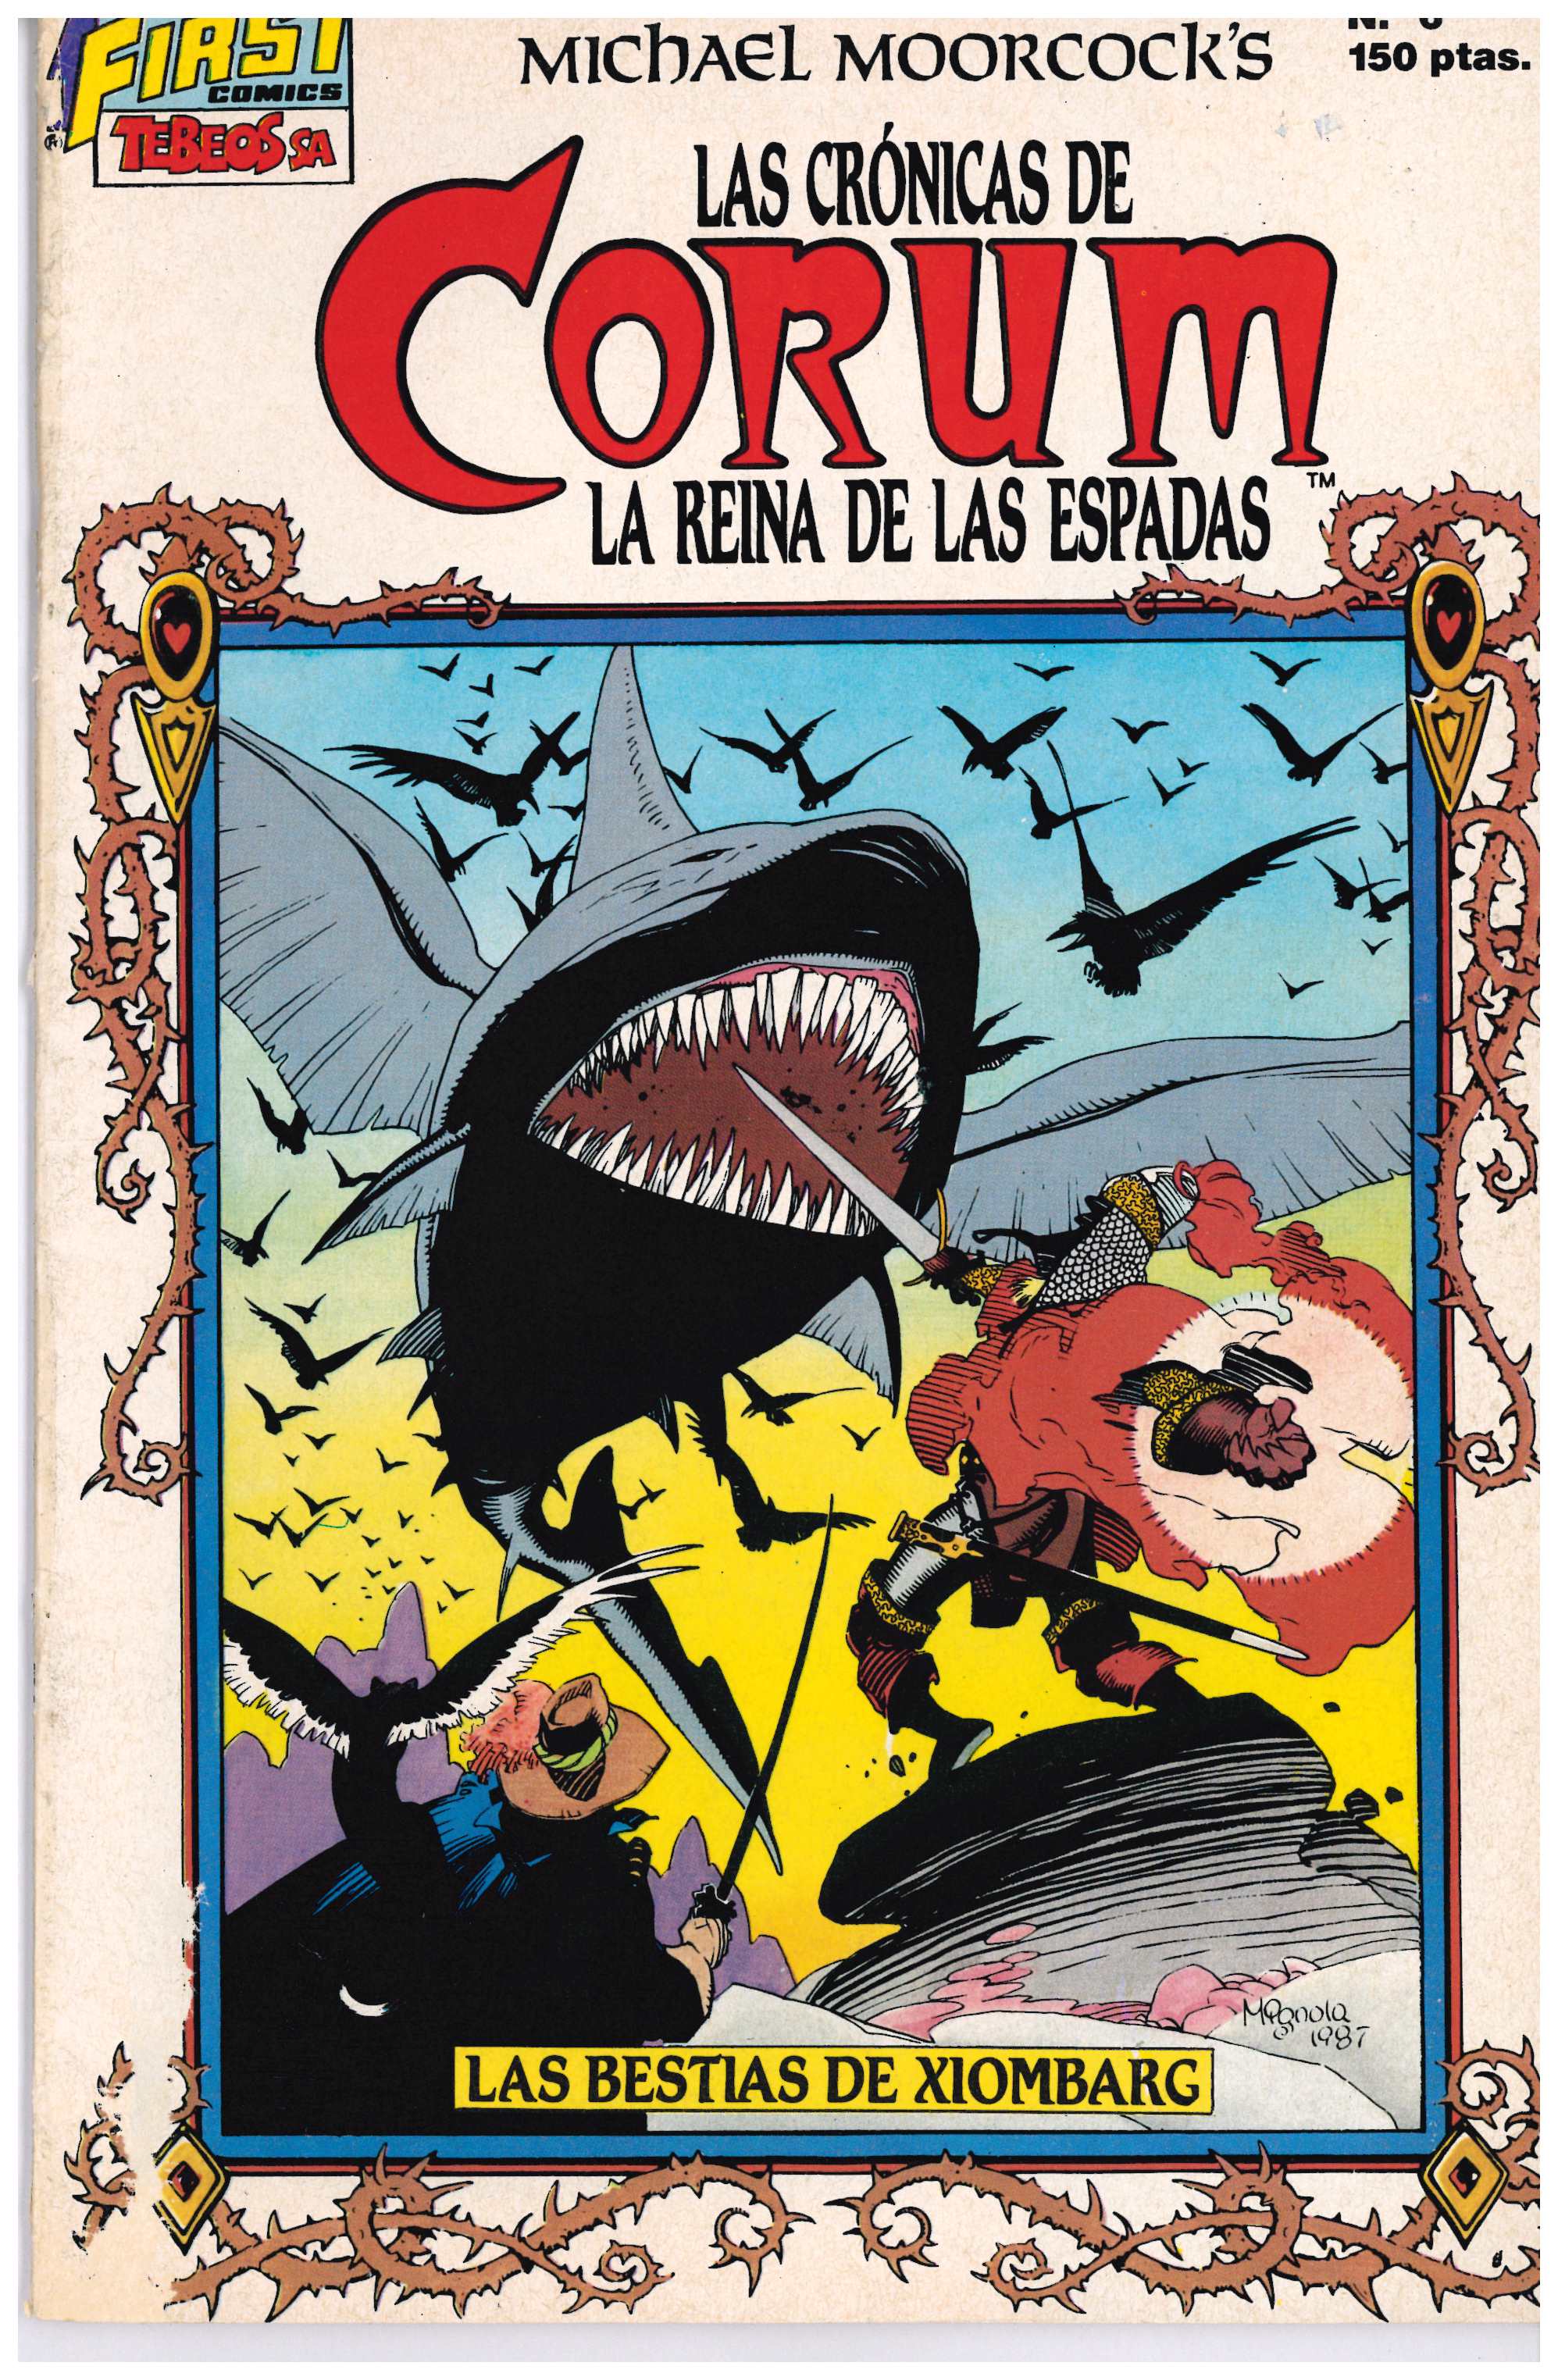 Las Crónicas de Corum. Ediciones B 1988. Nº 6